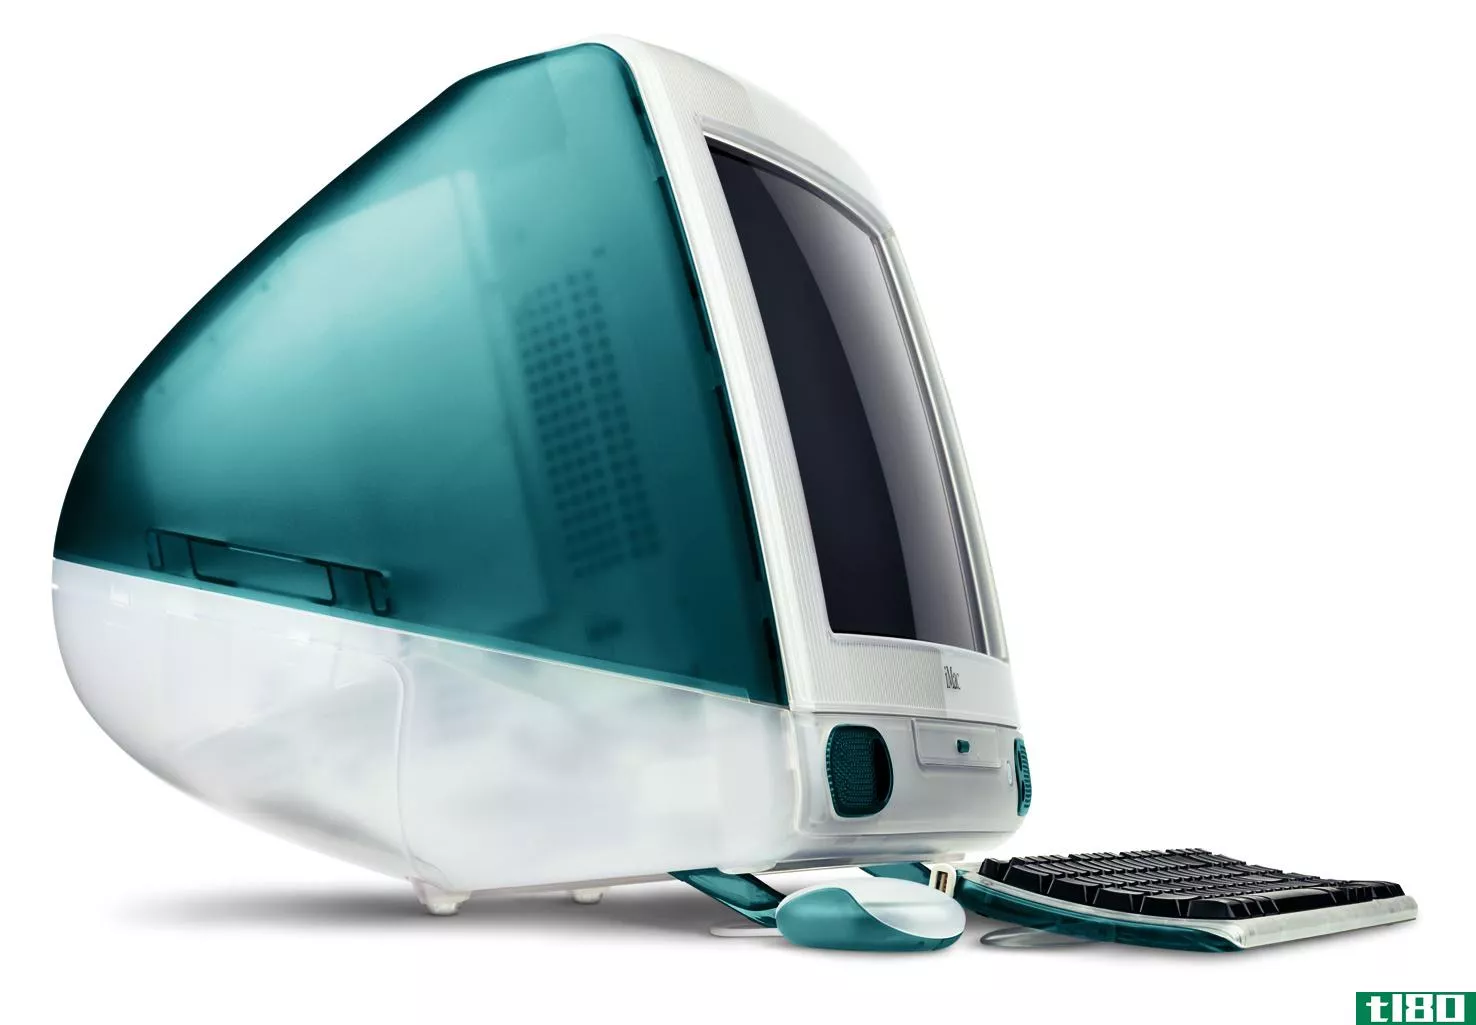 还记得早期辉煌的mac网络吗